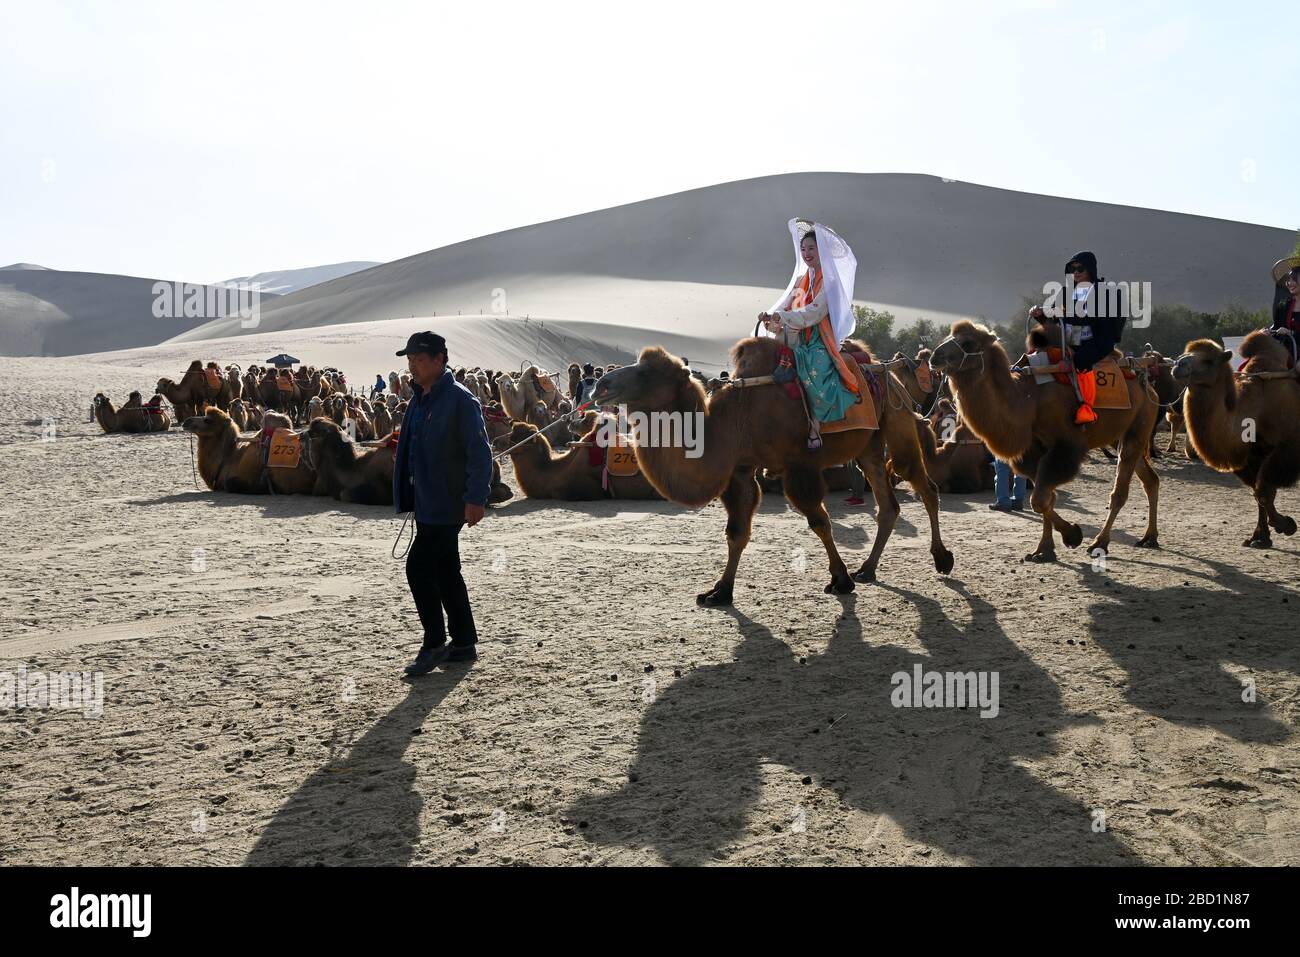 Les touristes sur les chameaux sont conduits dans les dunes de sable chantantes de Dunhuang, province du Gansu Nord-Ouest, Chine, Asie Banque D'Images